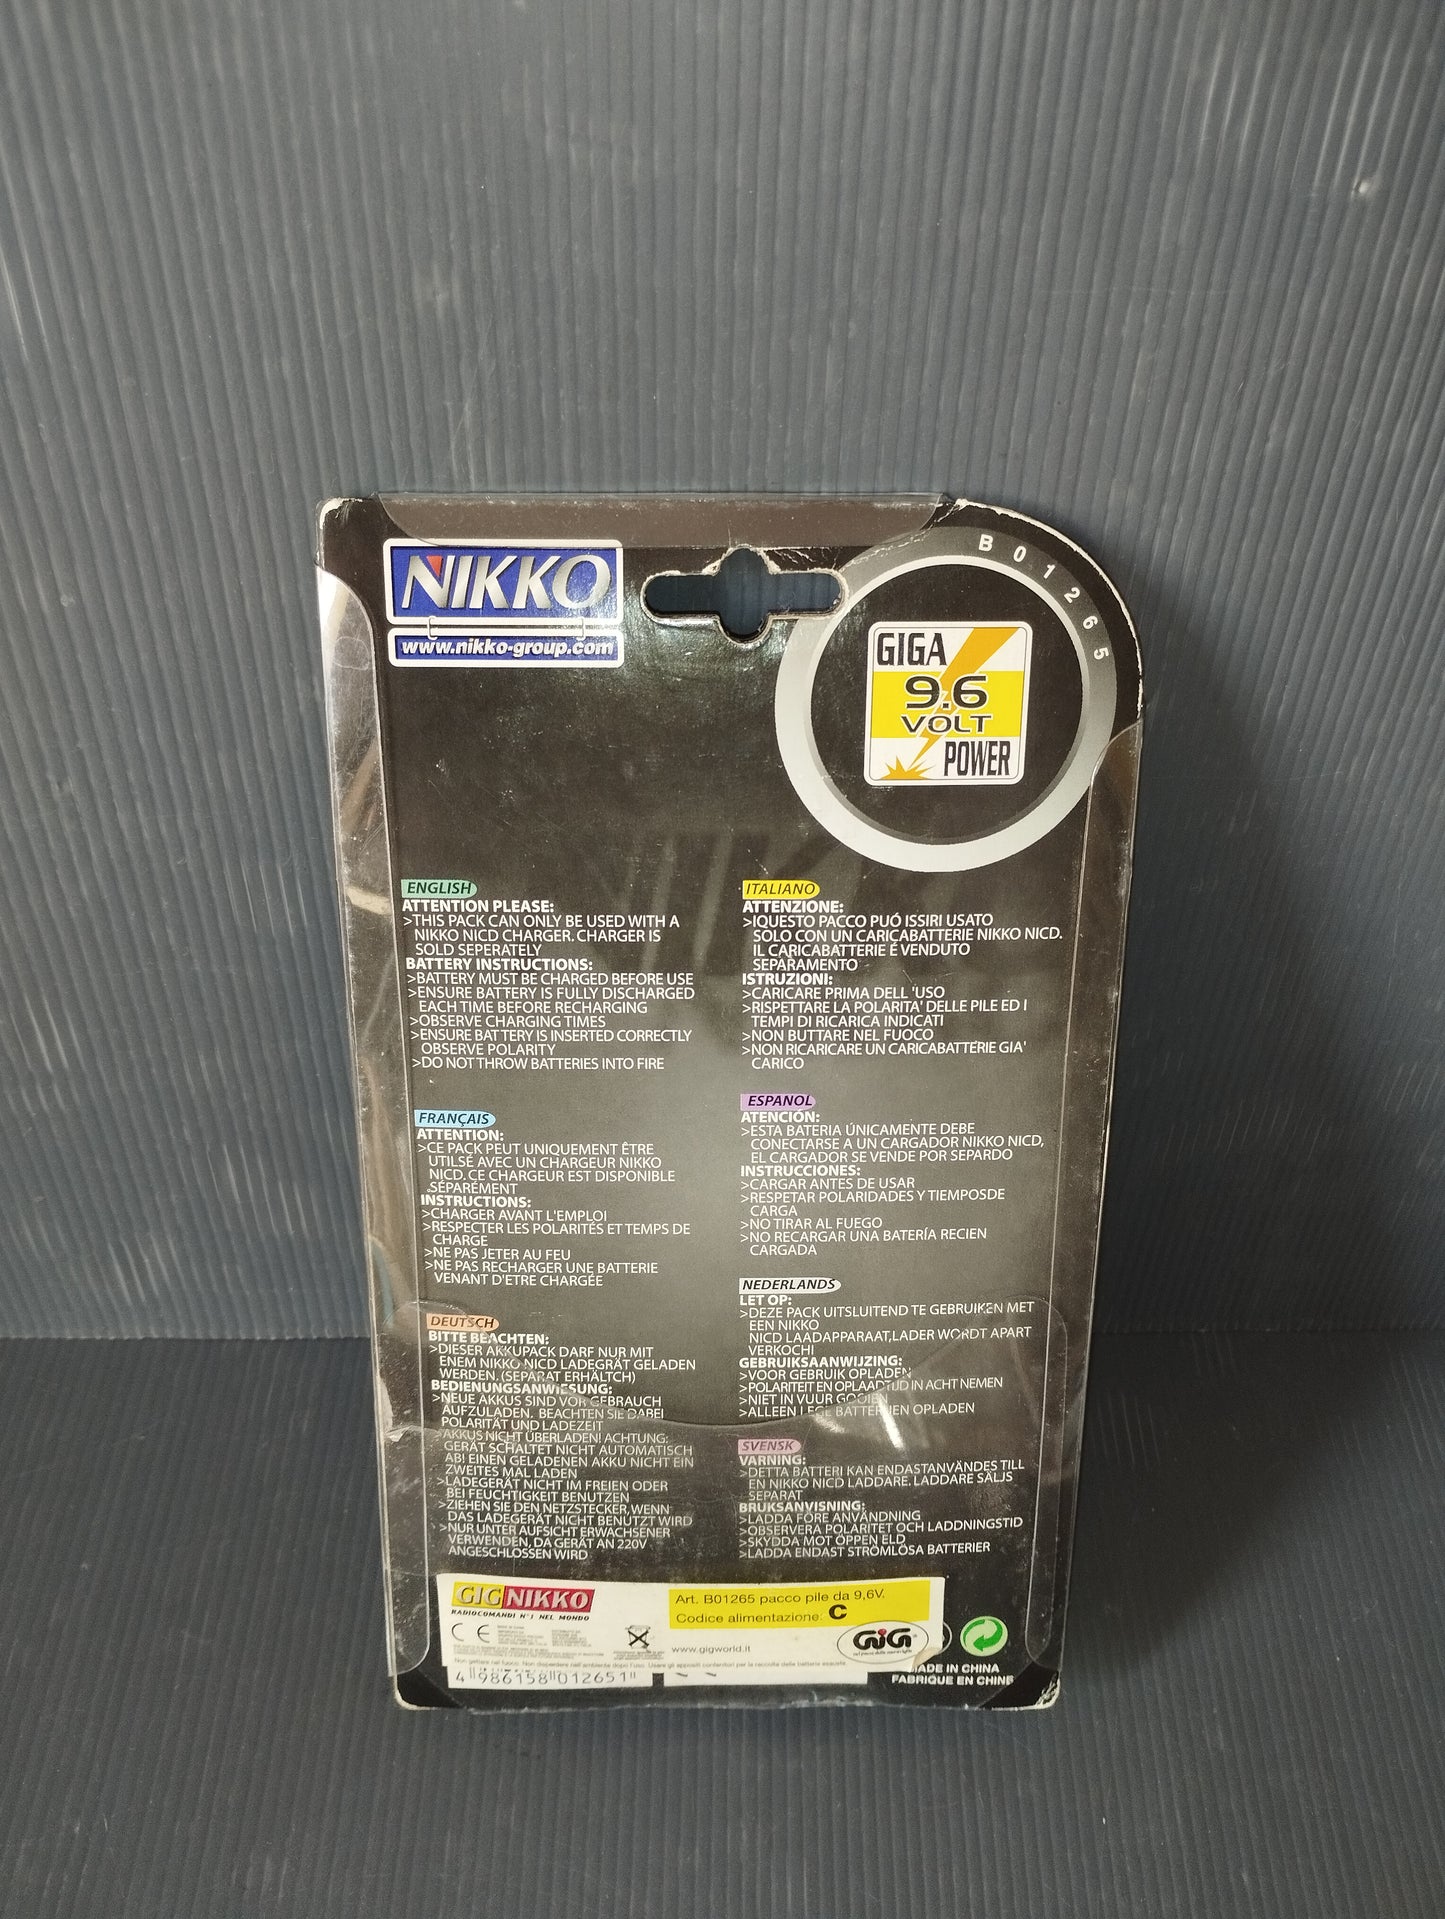 Nikko Battery 9.6V 650mAh

 Giga Power Pack